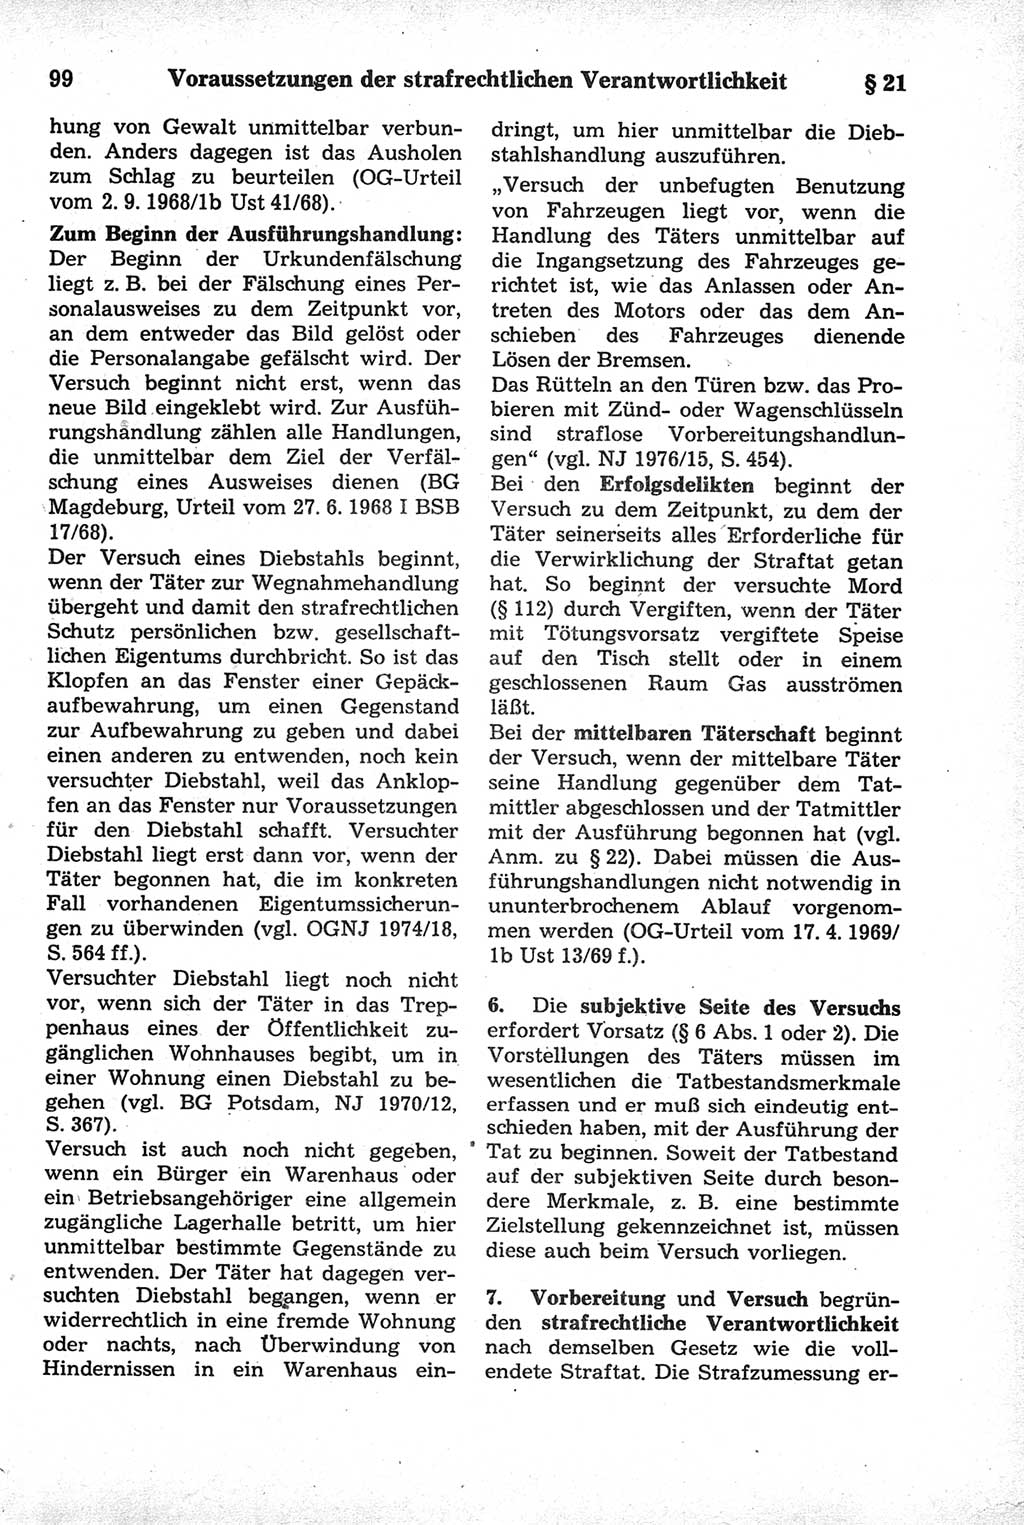 Strafrecht der Deutschen Demokratischen Republik (DDR), Kommentar zum Strafgesetzbuch (StGB) 1981, Seite 99 (Strafr. DDR Komm. StGB 1981, S. 99)